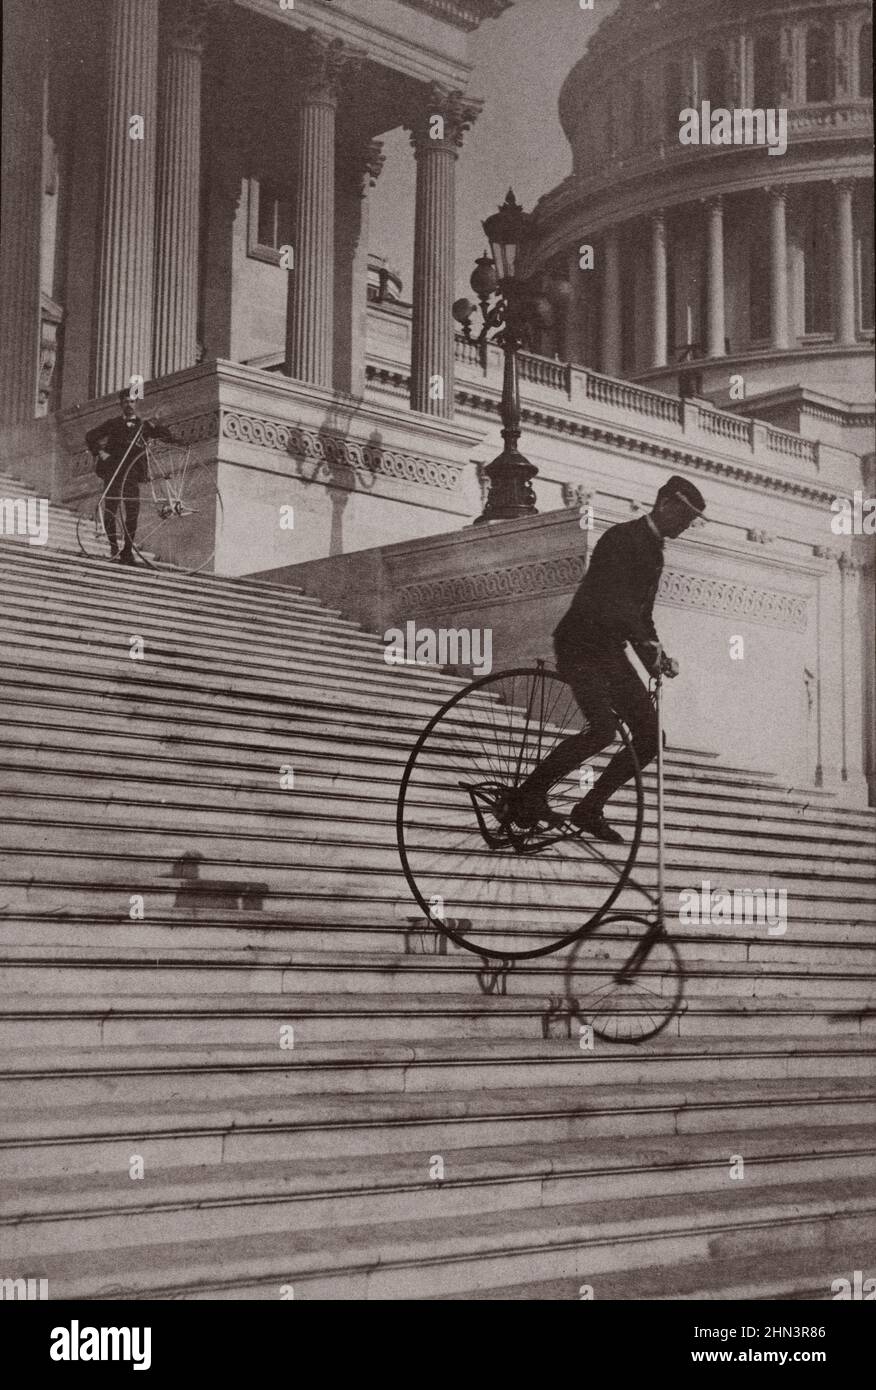 Das Vintage-Foto zeigt einen Mann, der mit dem Fahrrad die Stufen des US-Kapitols hinunterfährt, während ein anderer Mann mit einem Fahrrad an der Spitze wartet. 1884 Stockfoto